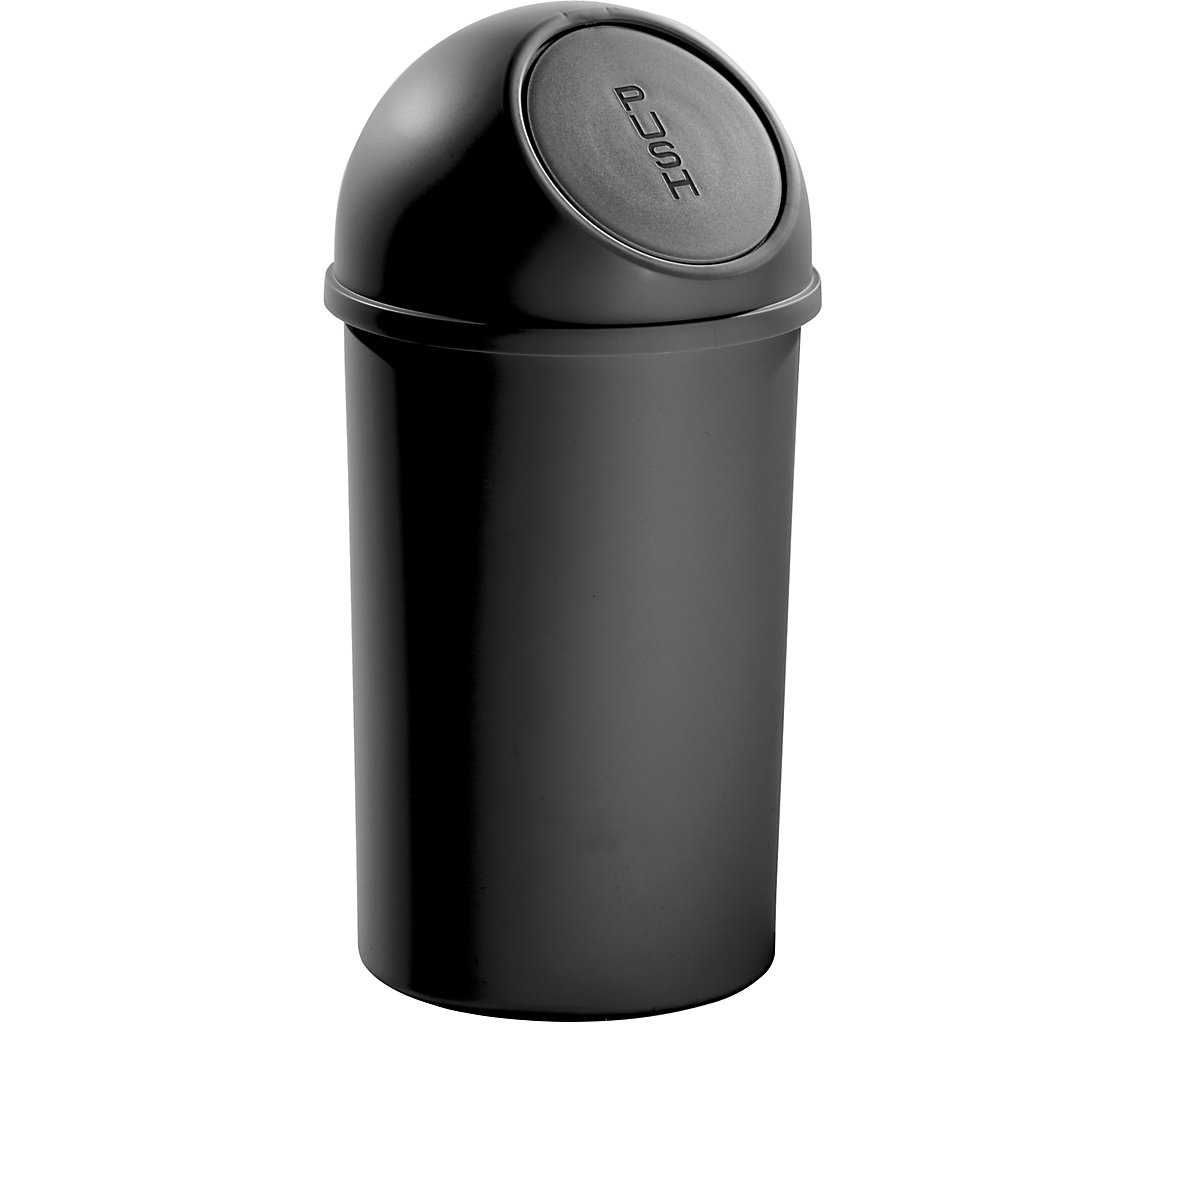 Push-Abfallbehälter aus Kunststoff helit